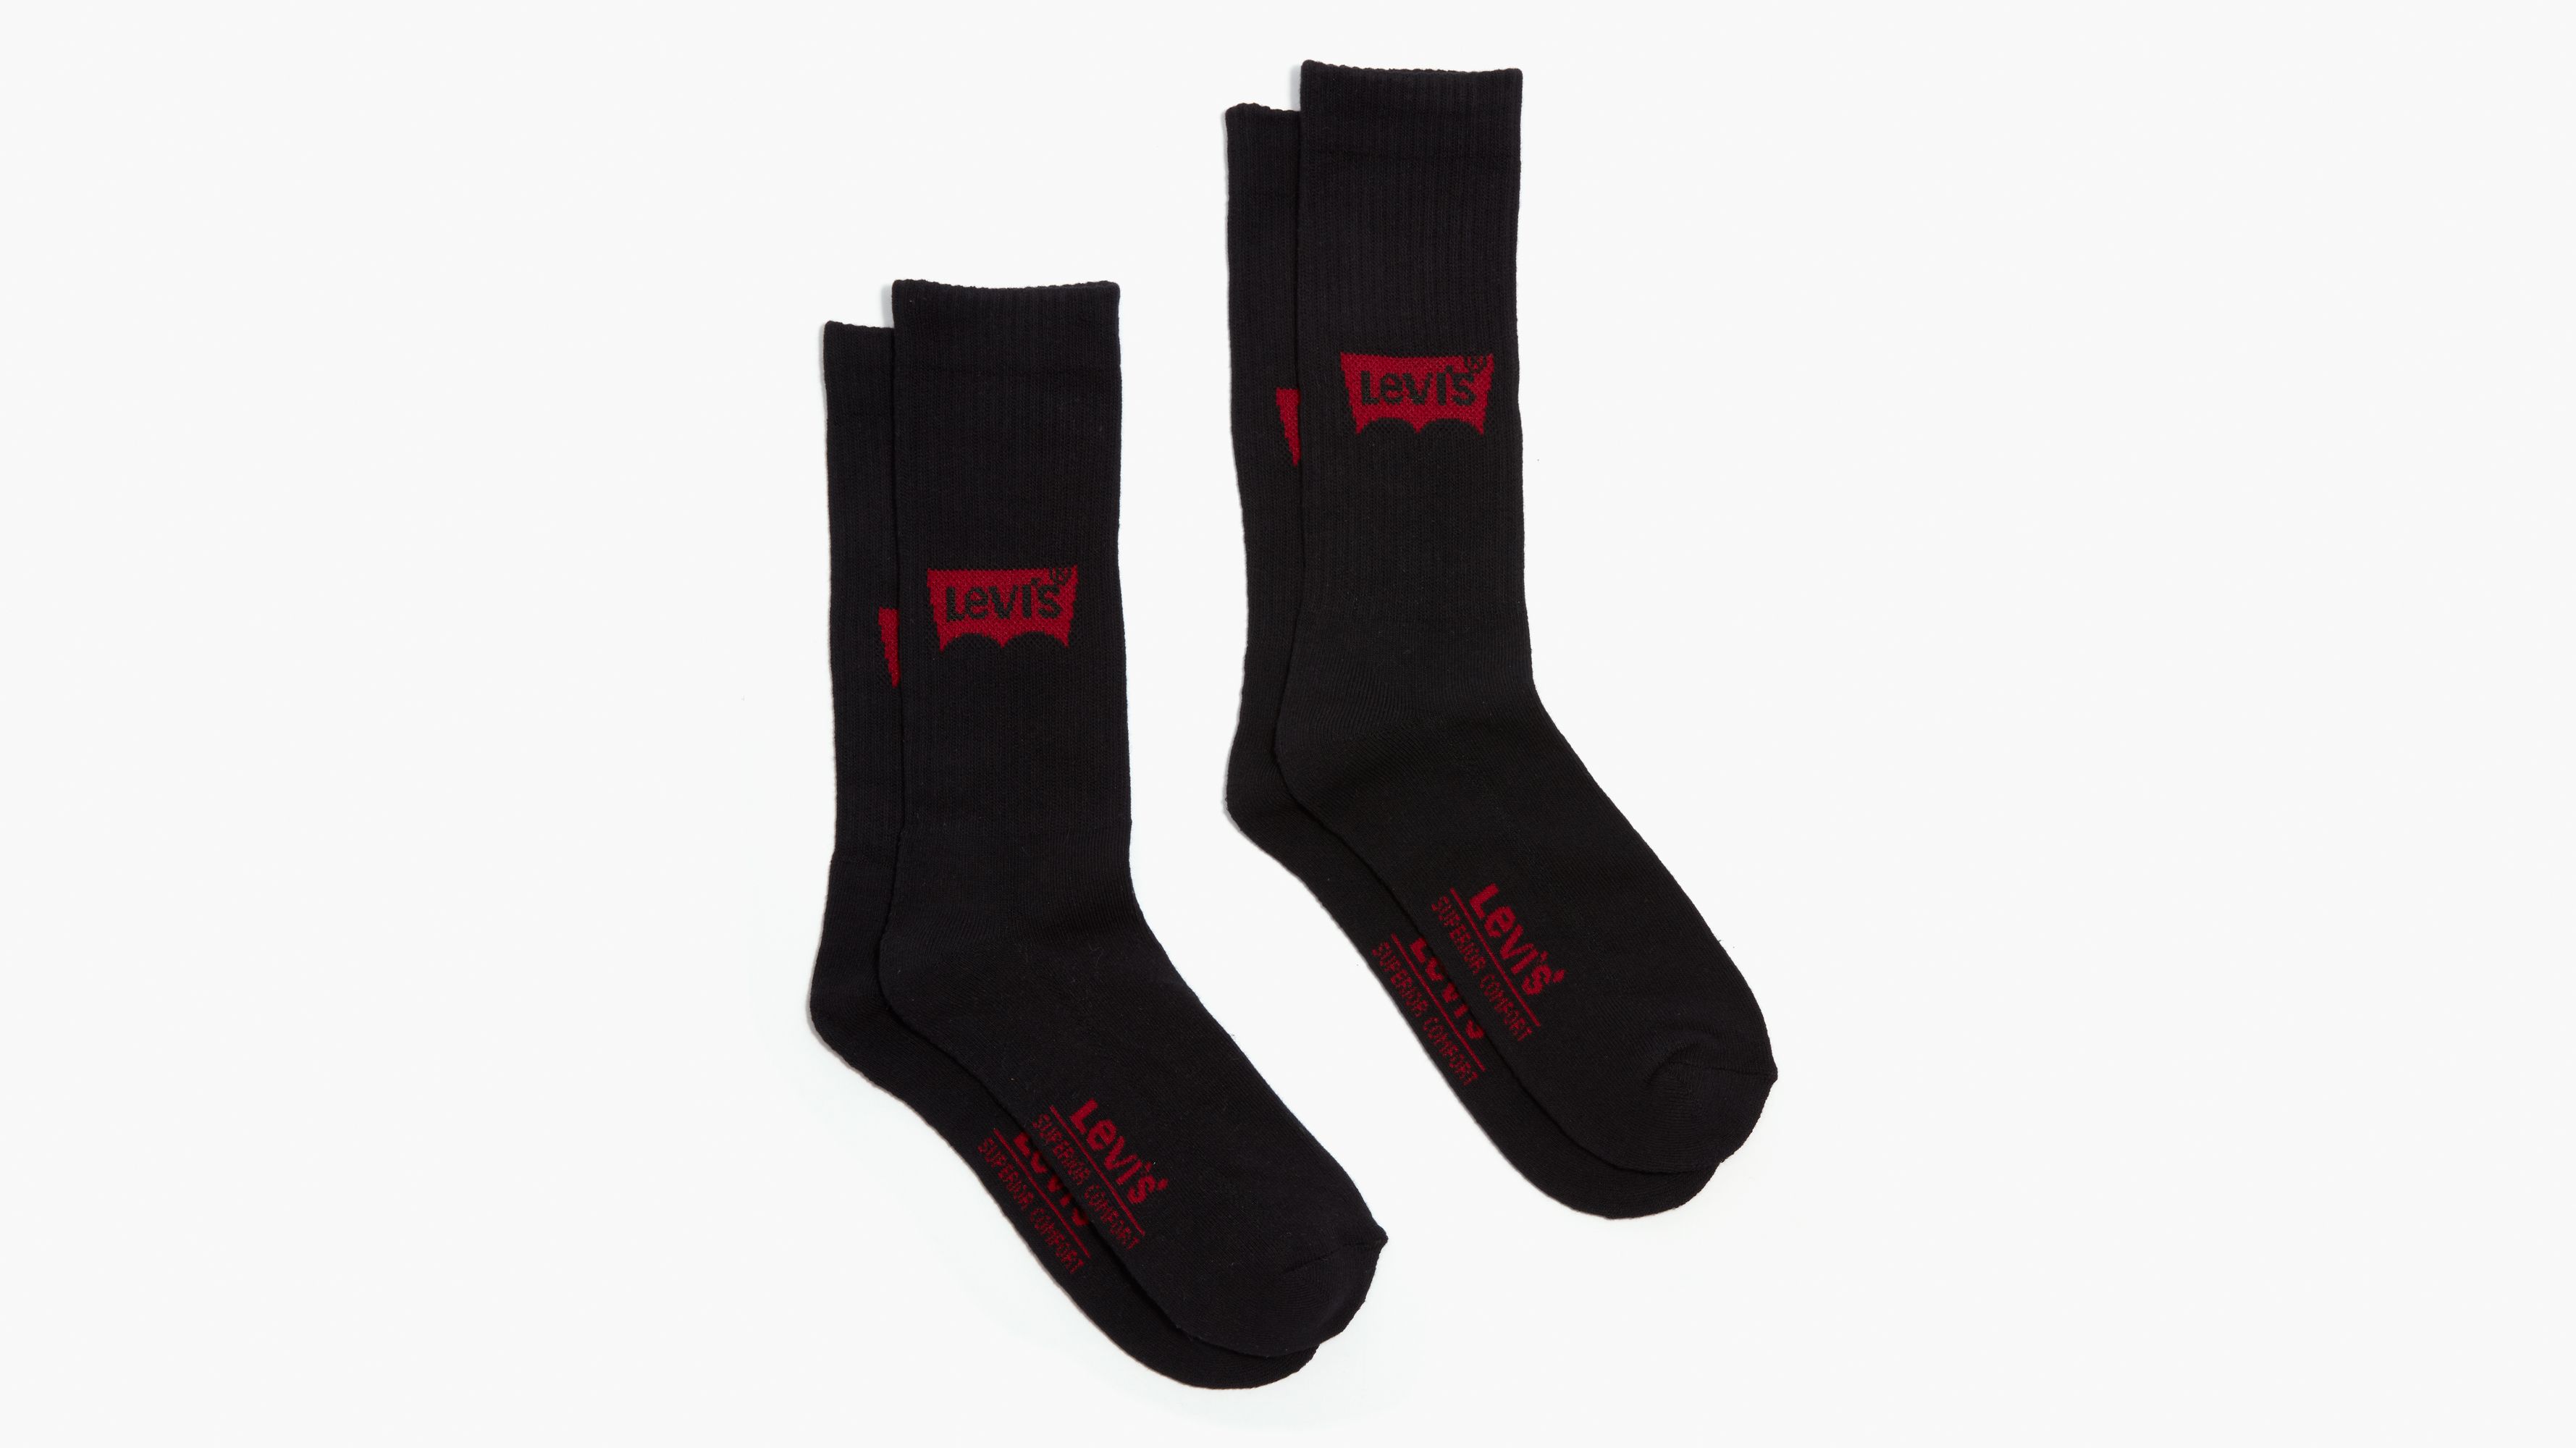 levi's socks